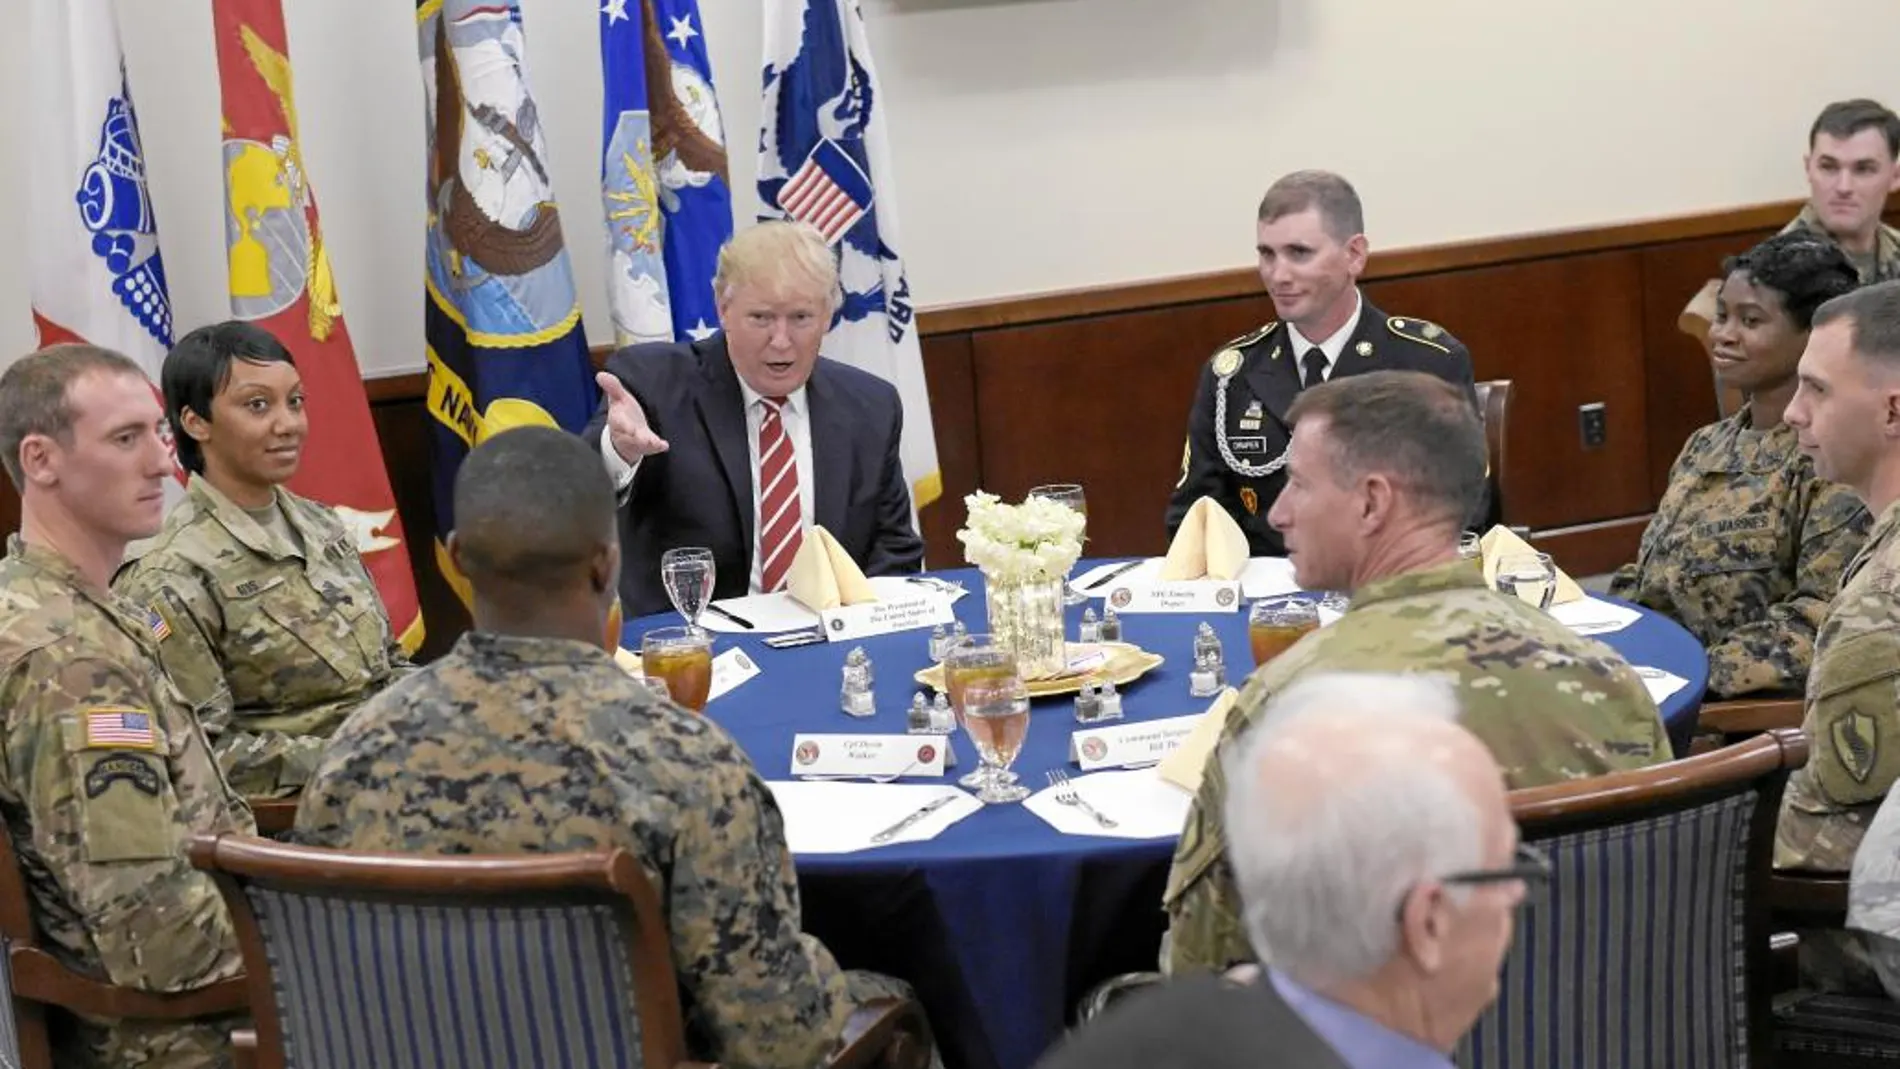 El presidente Donald Trump almuerza con las tropas durante su visita al Comando Central, en la base aérea de MacDill, en Florida